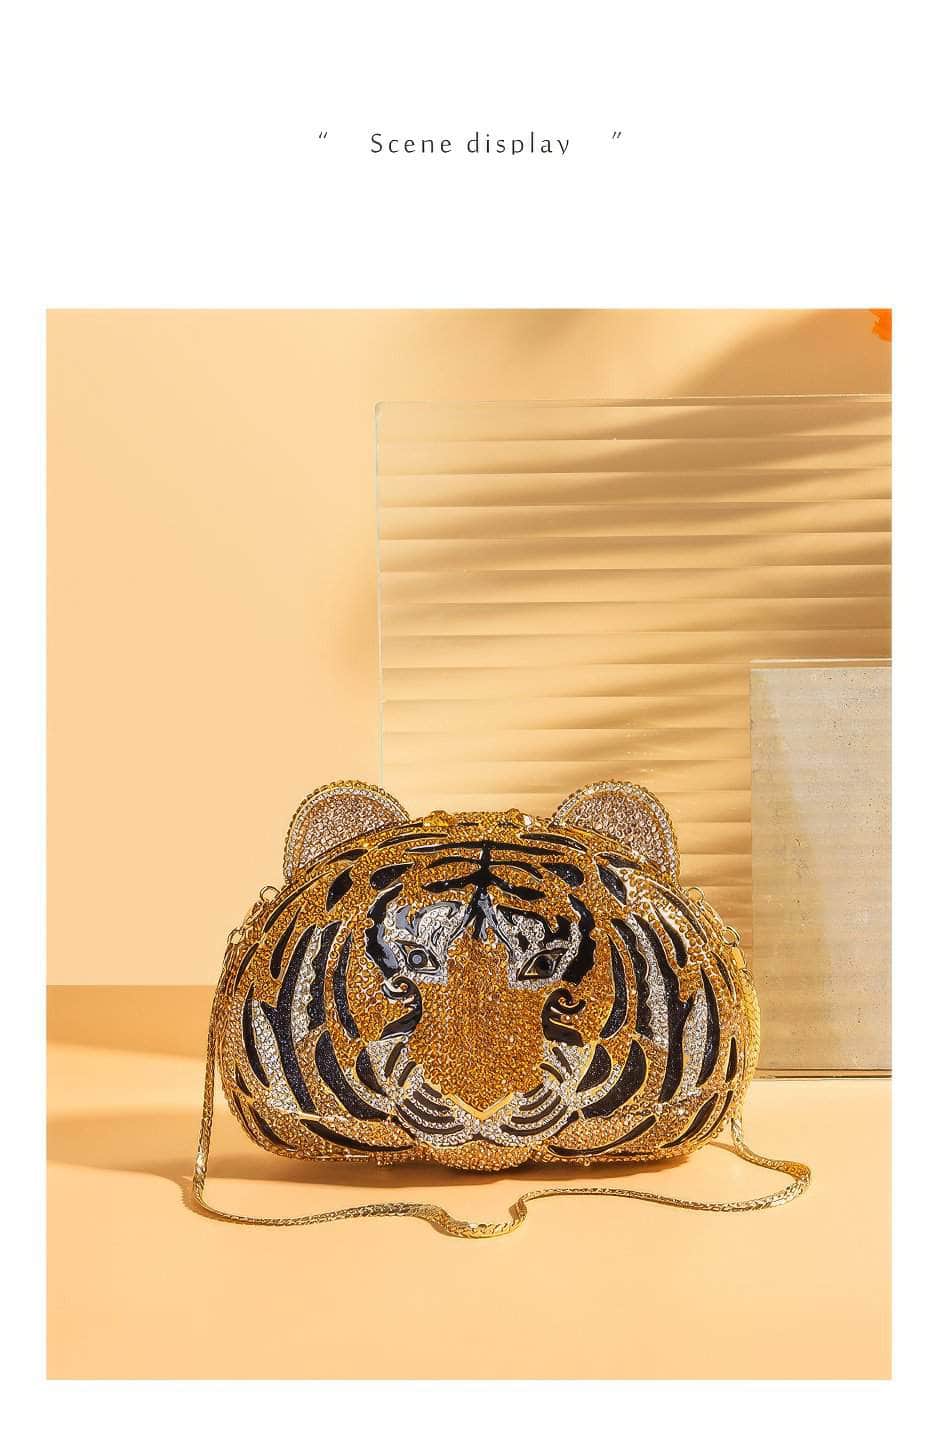 Luxury Sparkling Tiger Crystal Clutch Purse